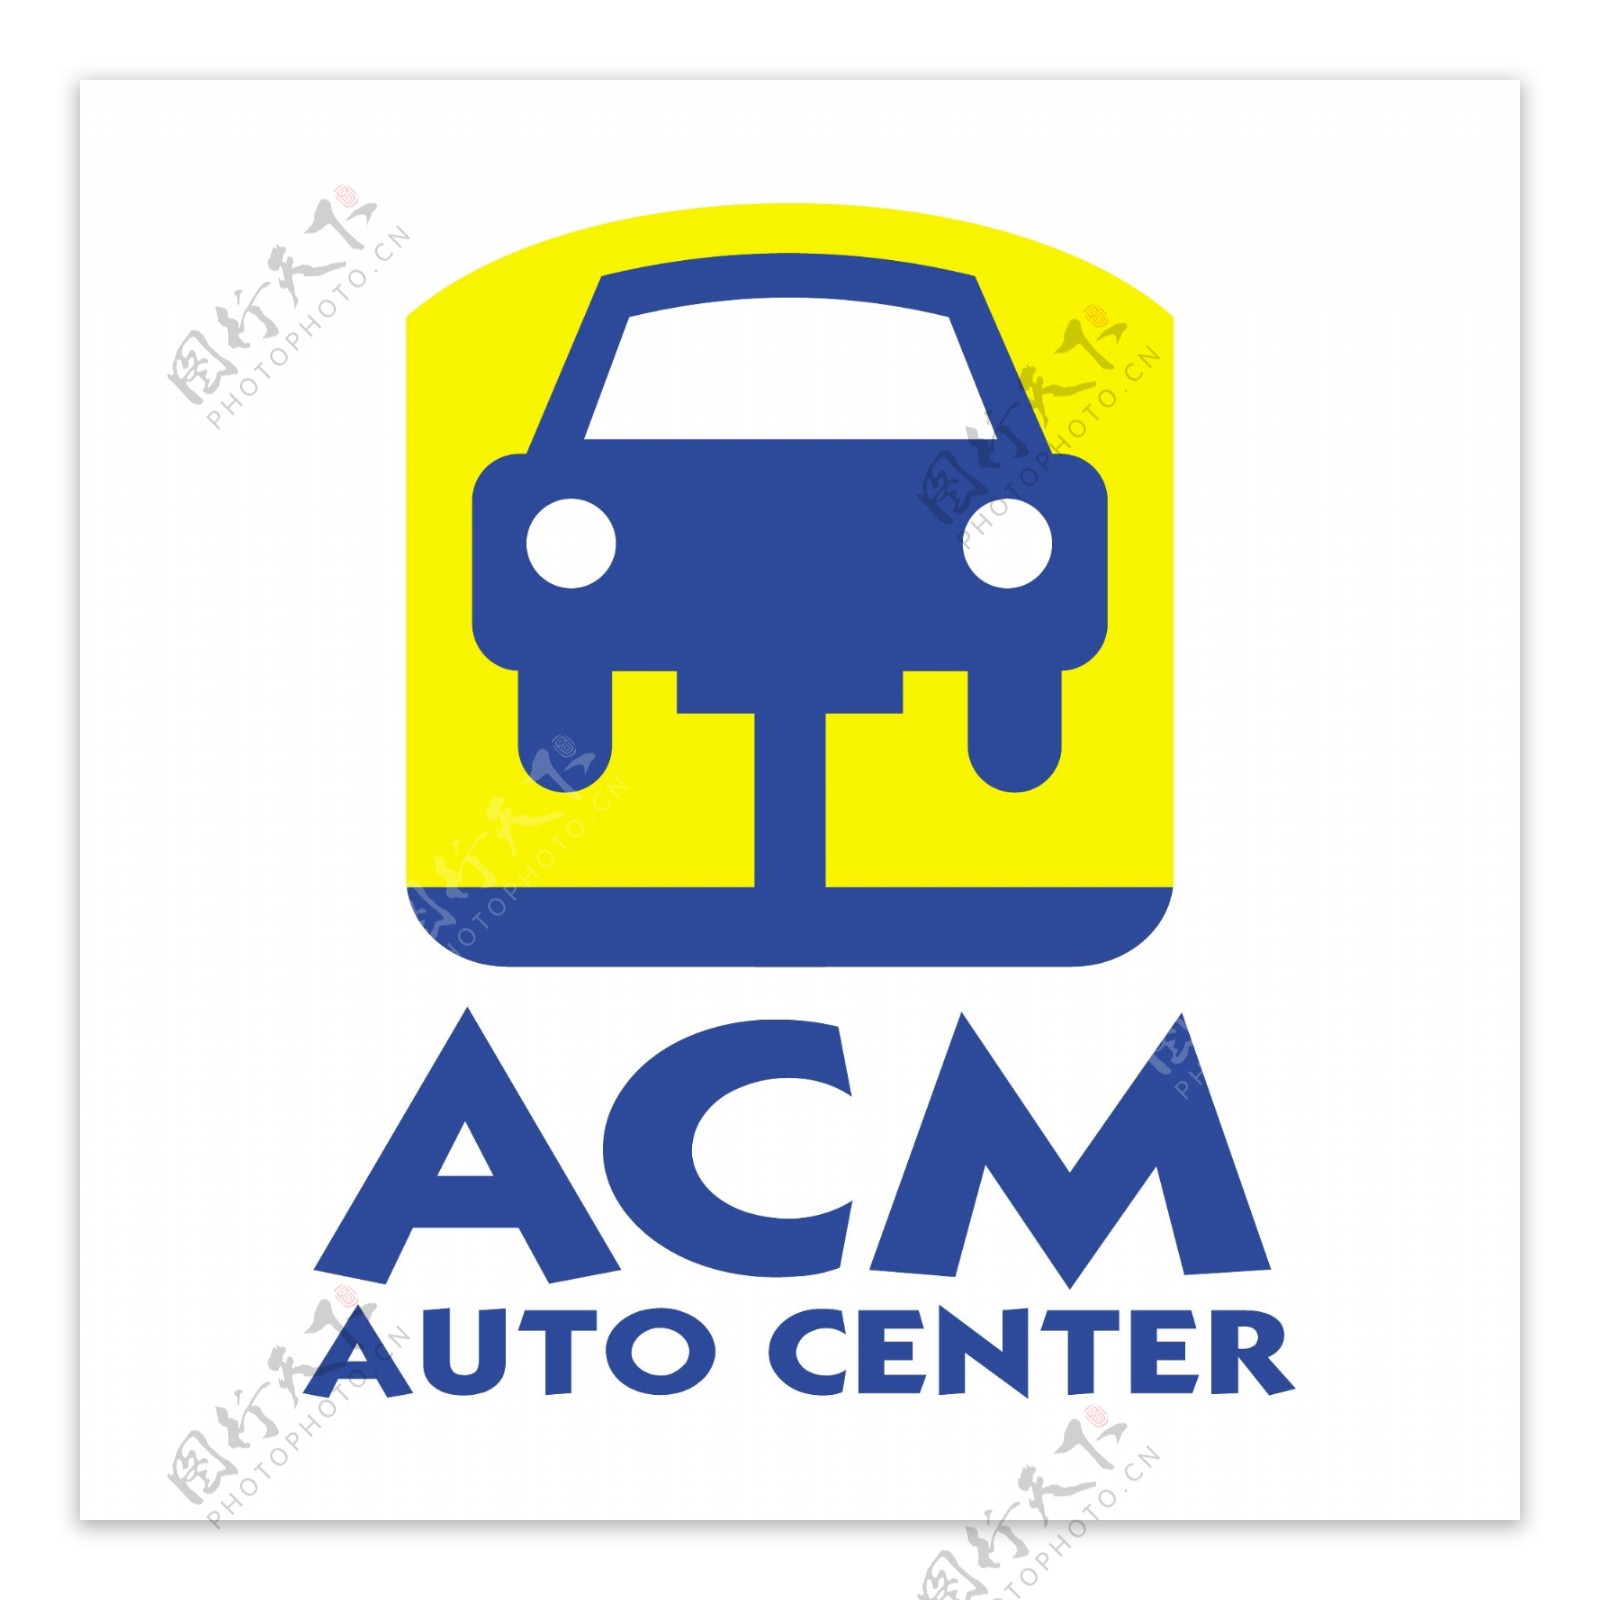 ACM汽车中心0